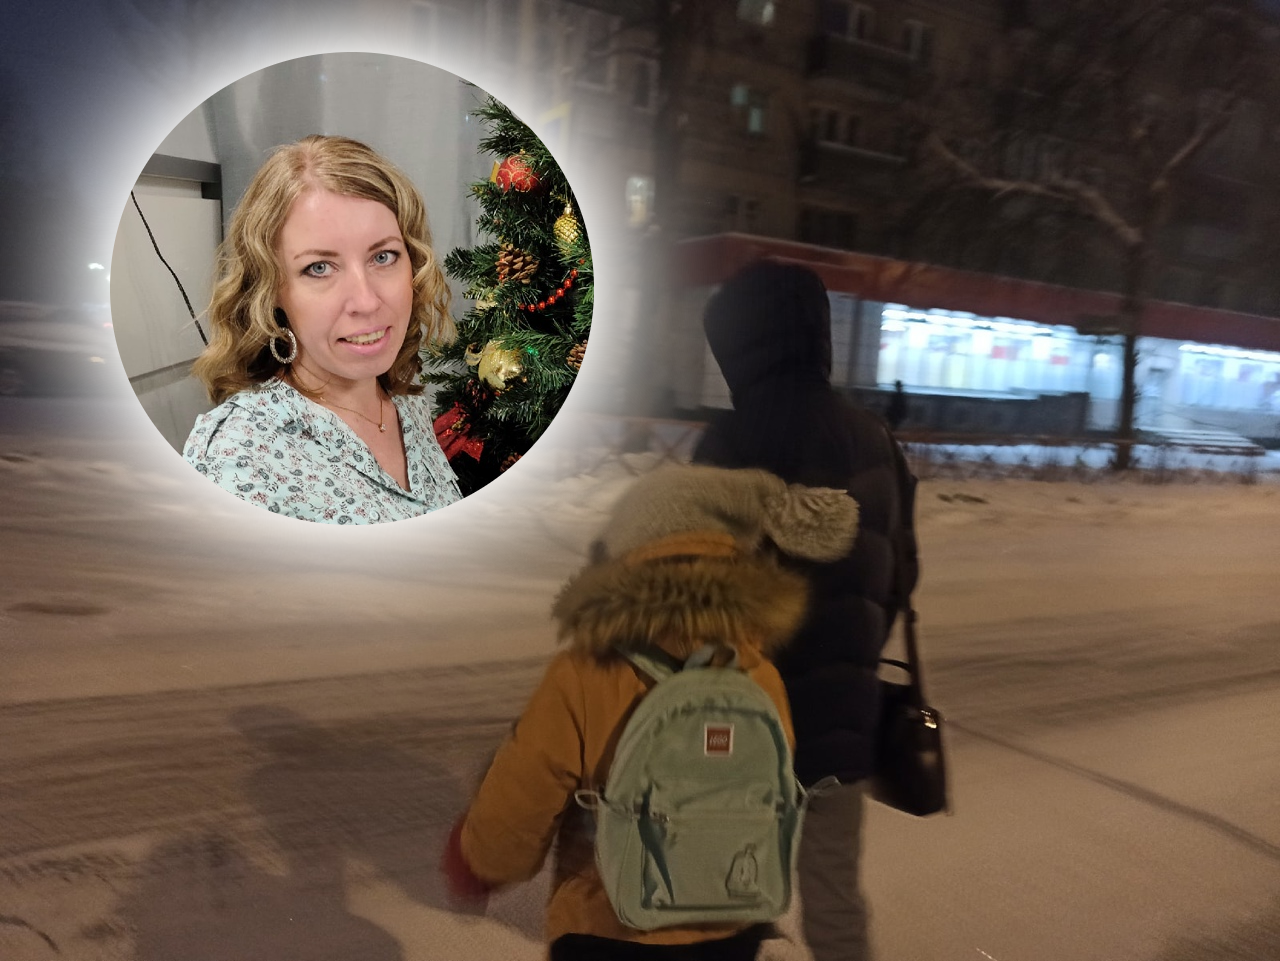 "Выходи из трамвая": в Ярославле ребенка, которому не хватило на проезд, выгнали на мороз